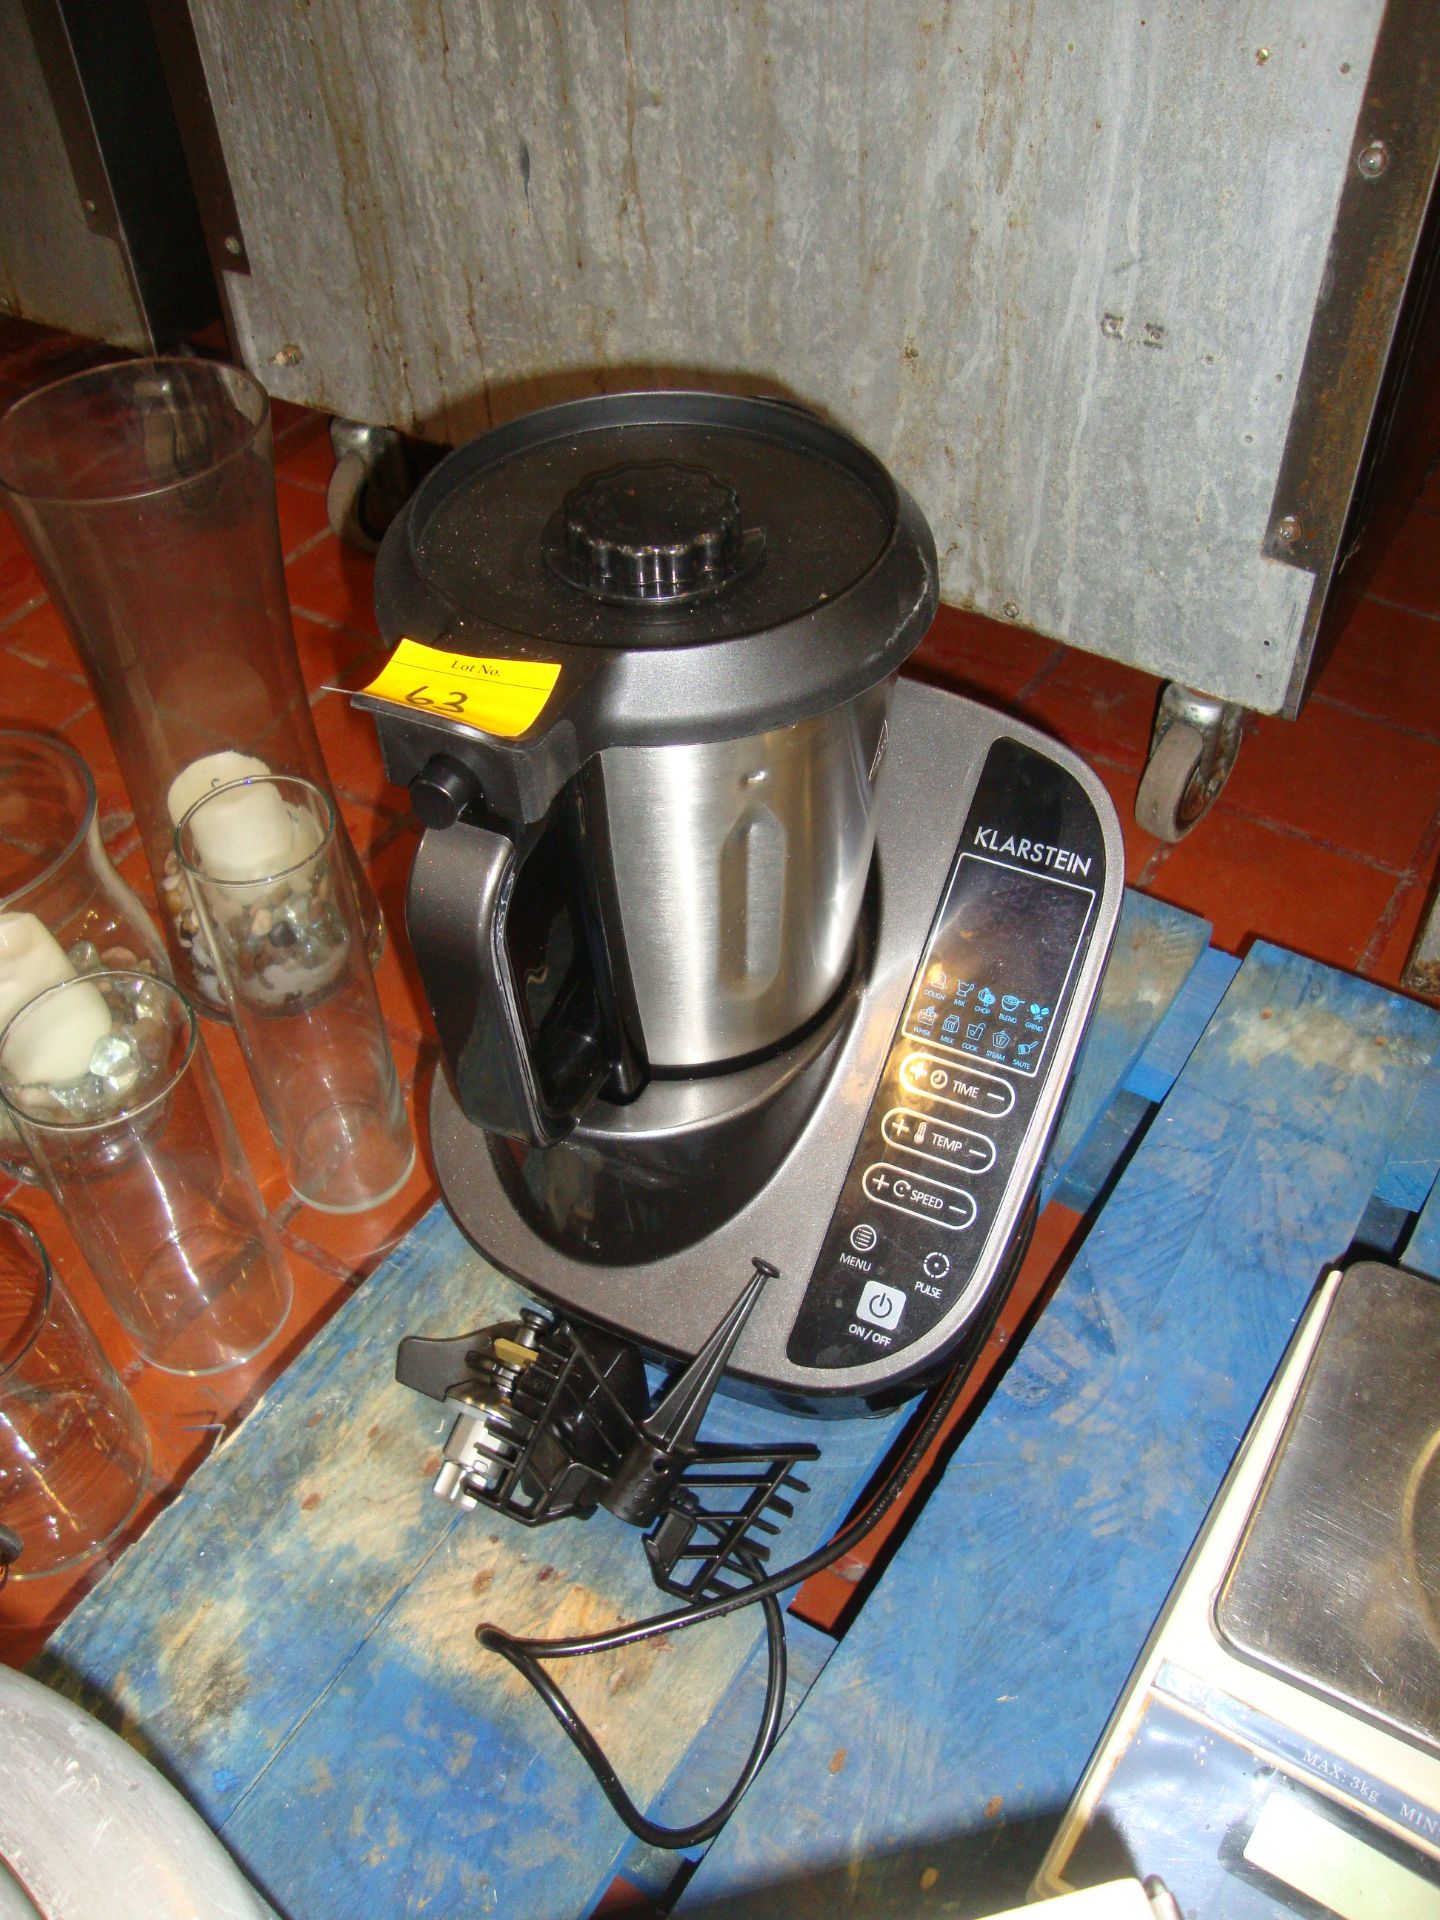 Klarstein cooking processor model 10030153